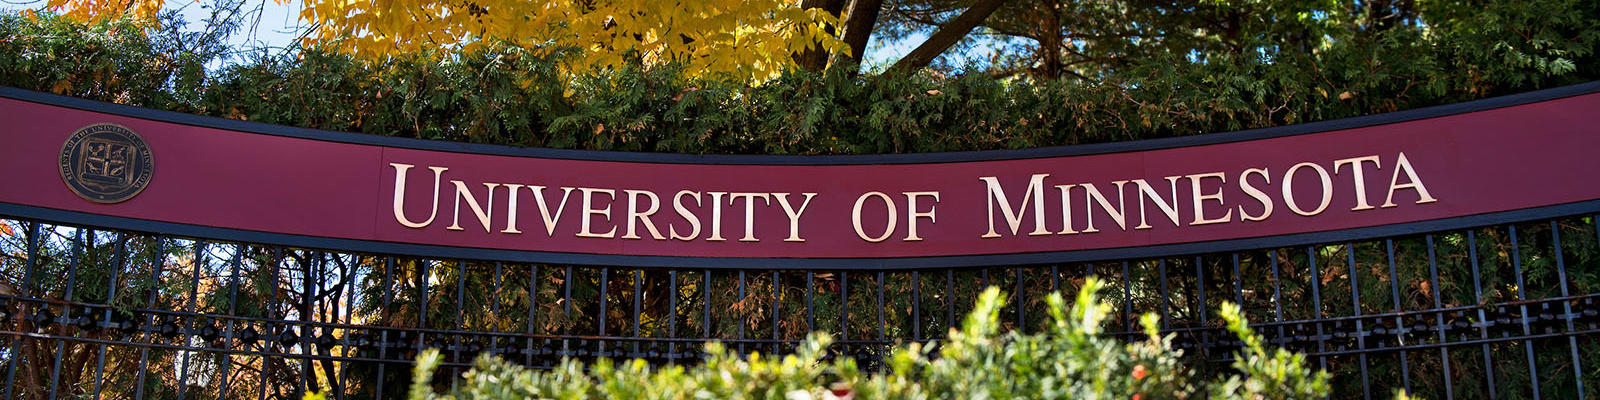 University of Minnesota sign on black metal fence